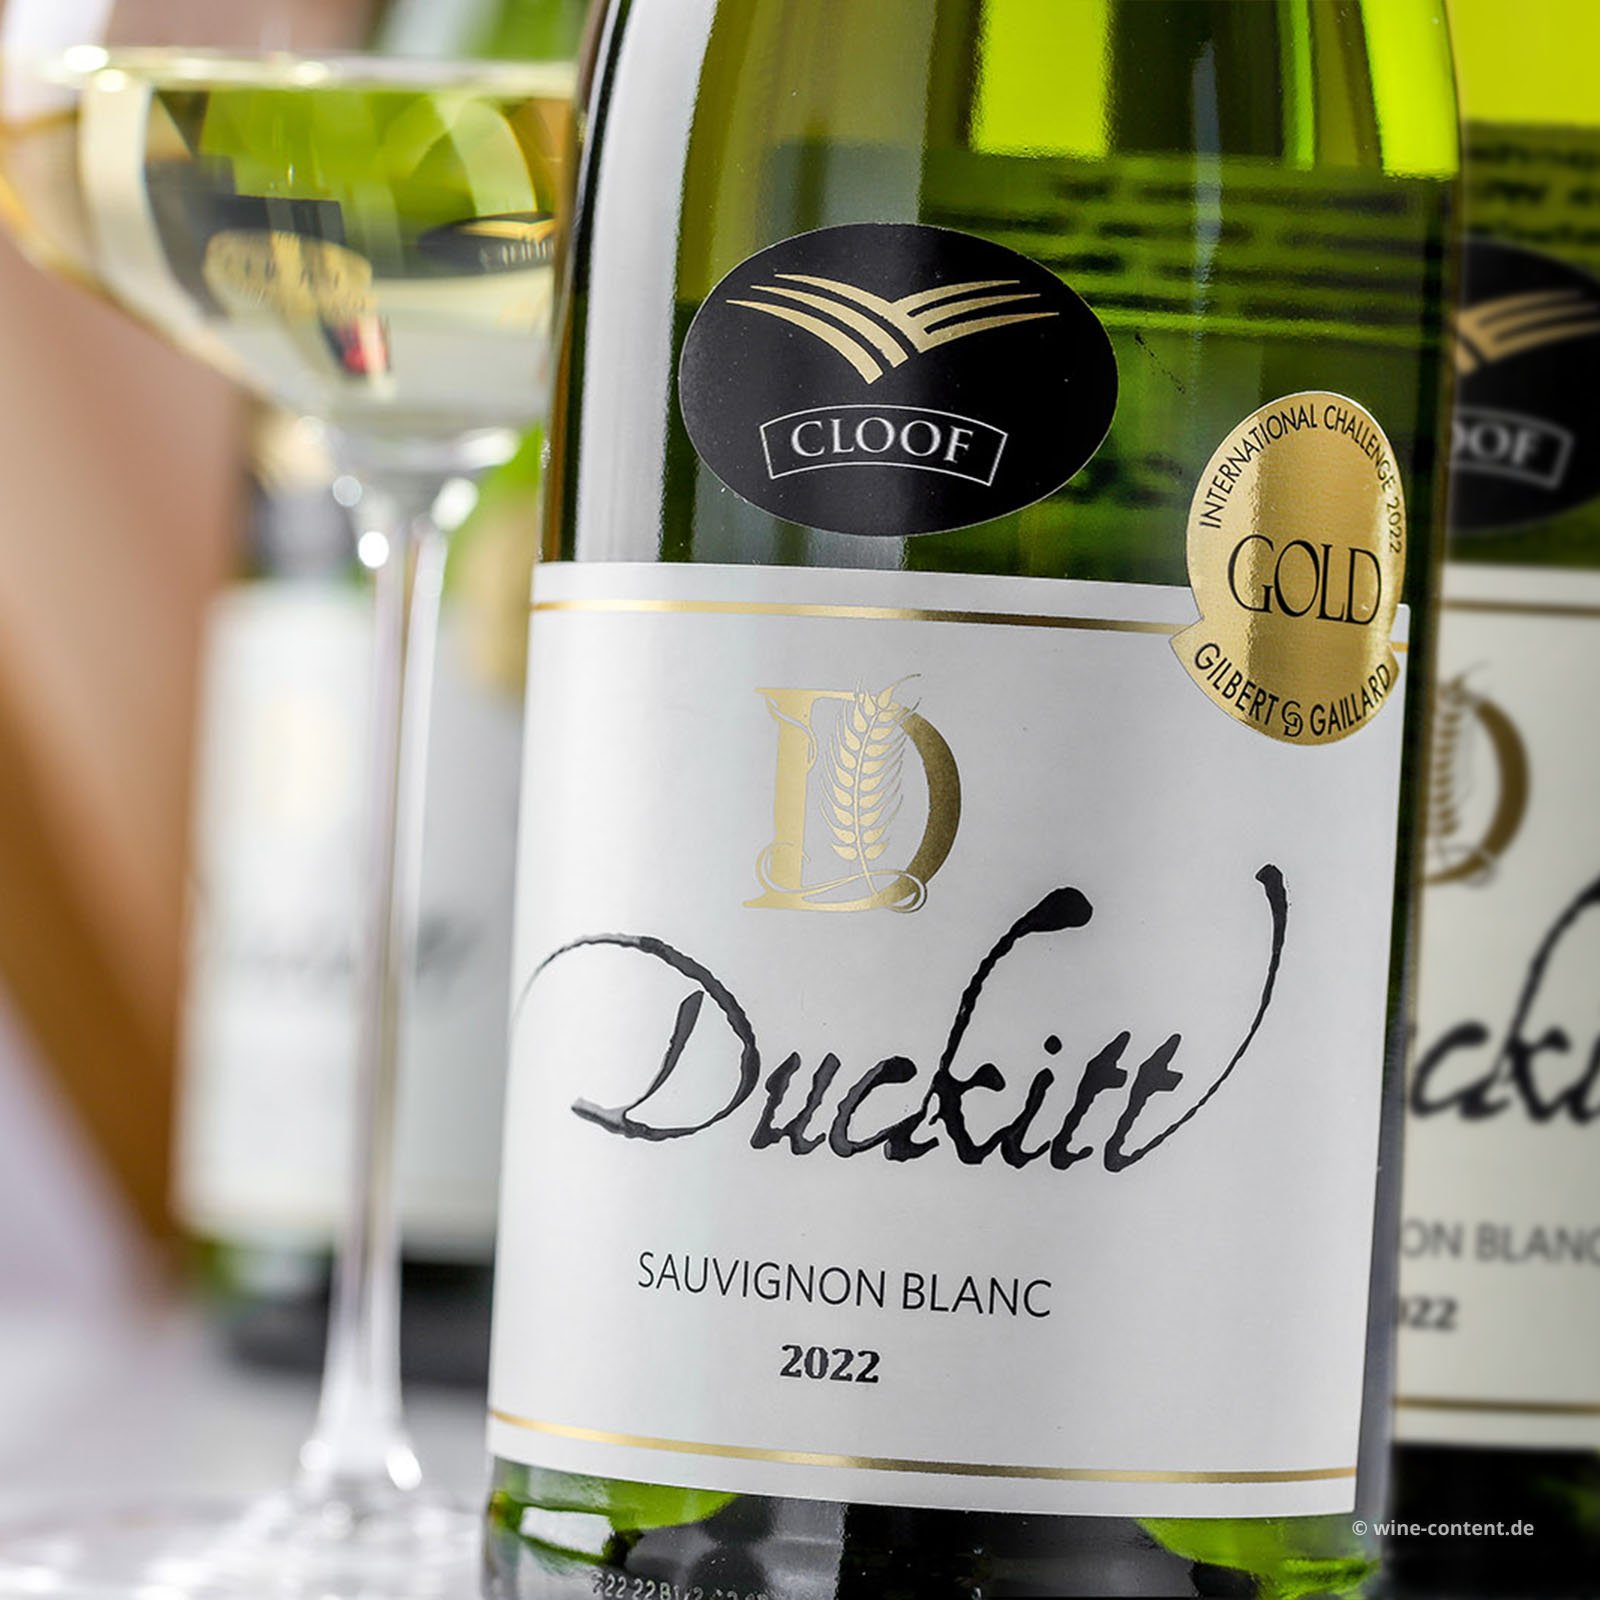 5+1 Sparpaket Sauvignon Blanc 2022 Duckitt